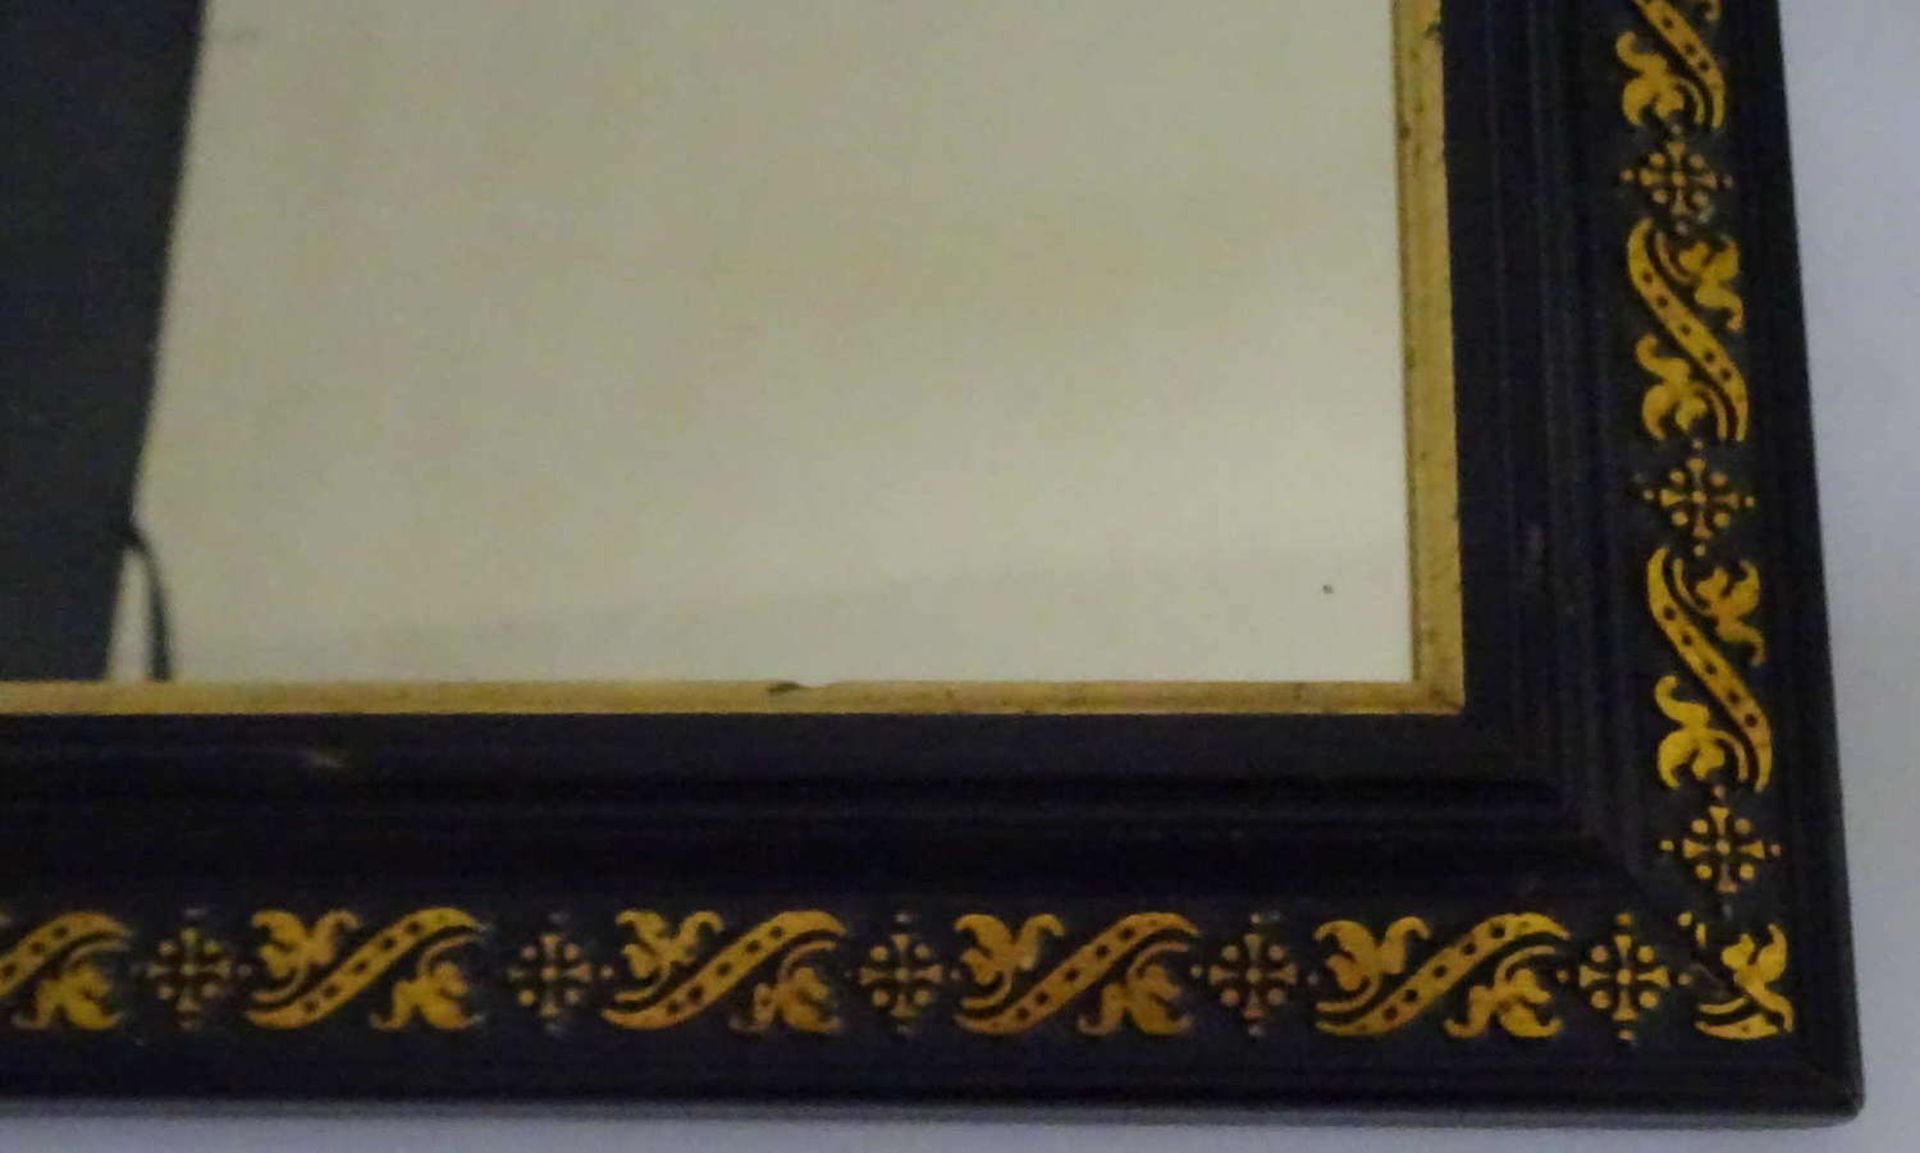 1 Spiegel, teilweise vergoldet. Höhe ca. 39 cm, Breite ca. 33 cm. Gebrauchter Zustand.1 mirror, - Image 2 of 2